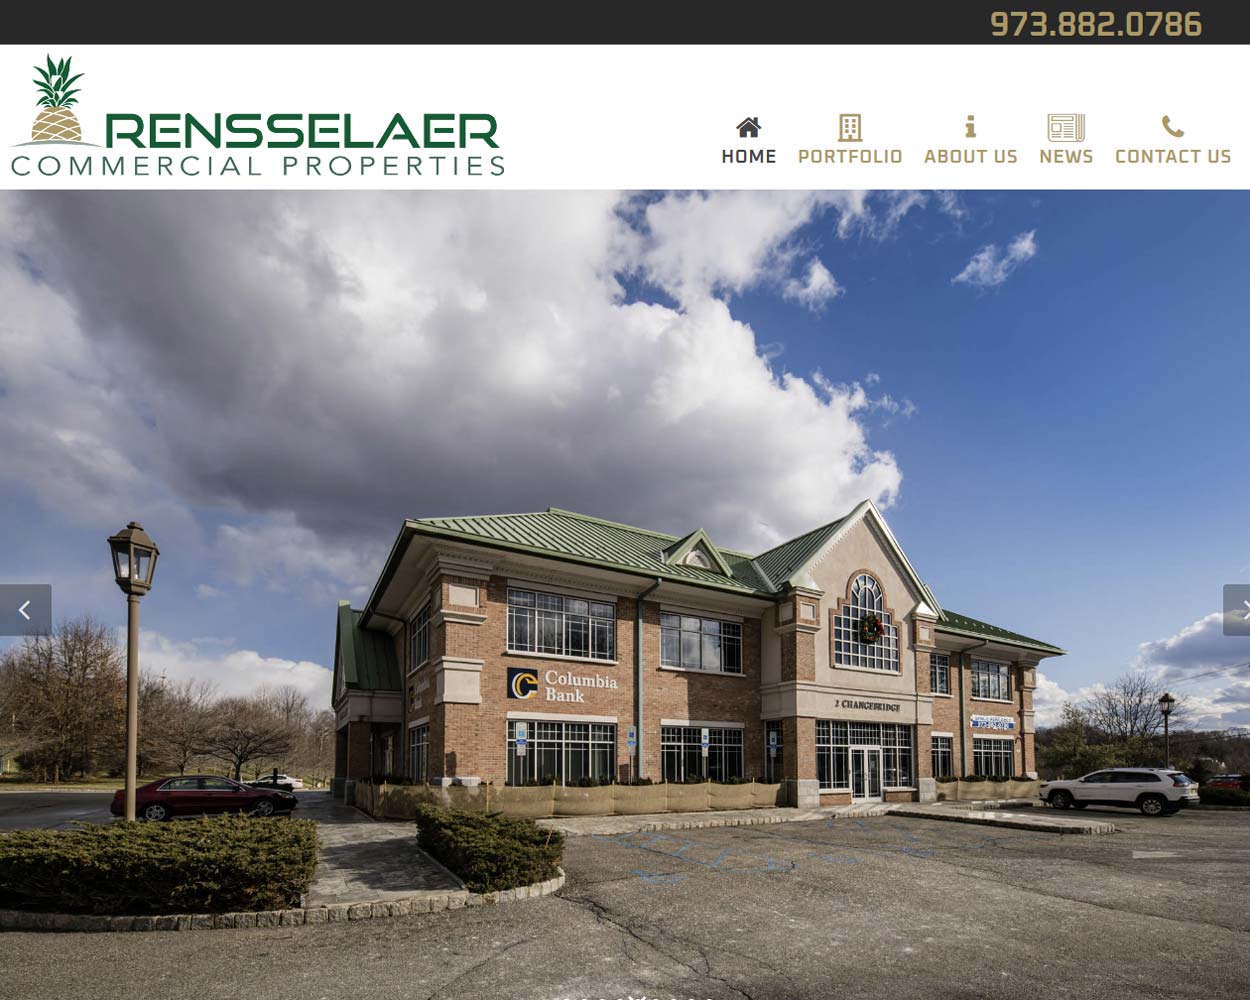 Rensselaer Commercial Properties